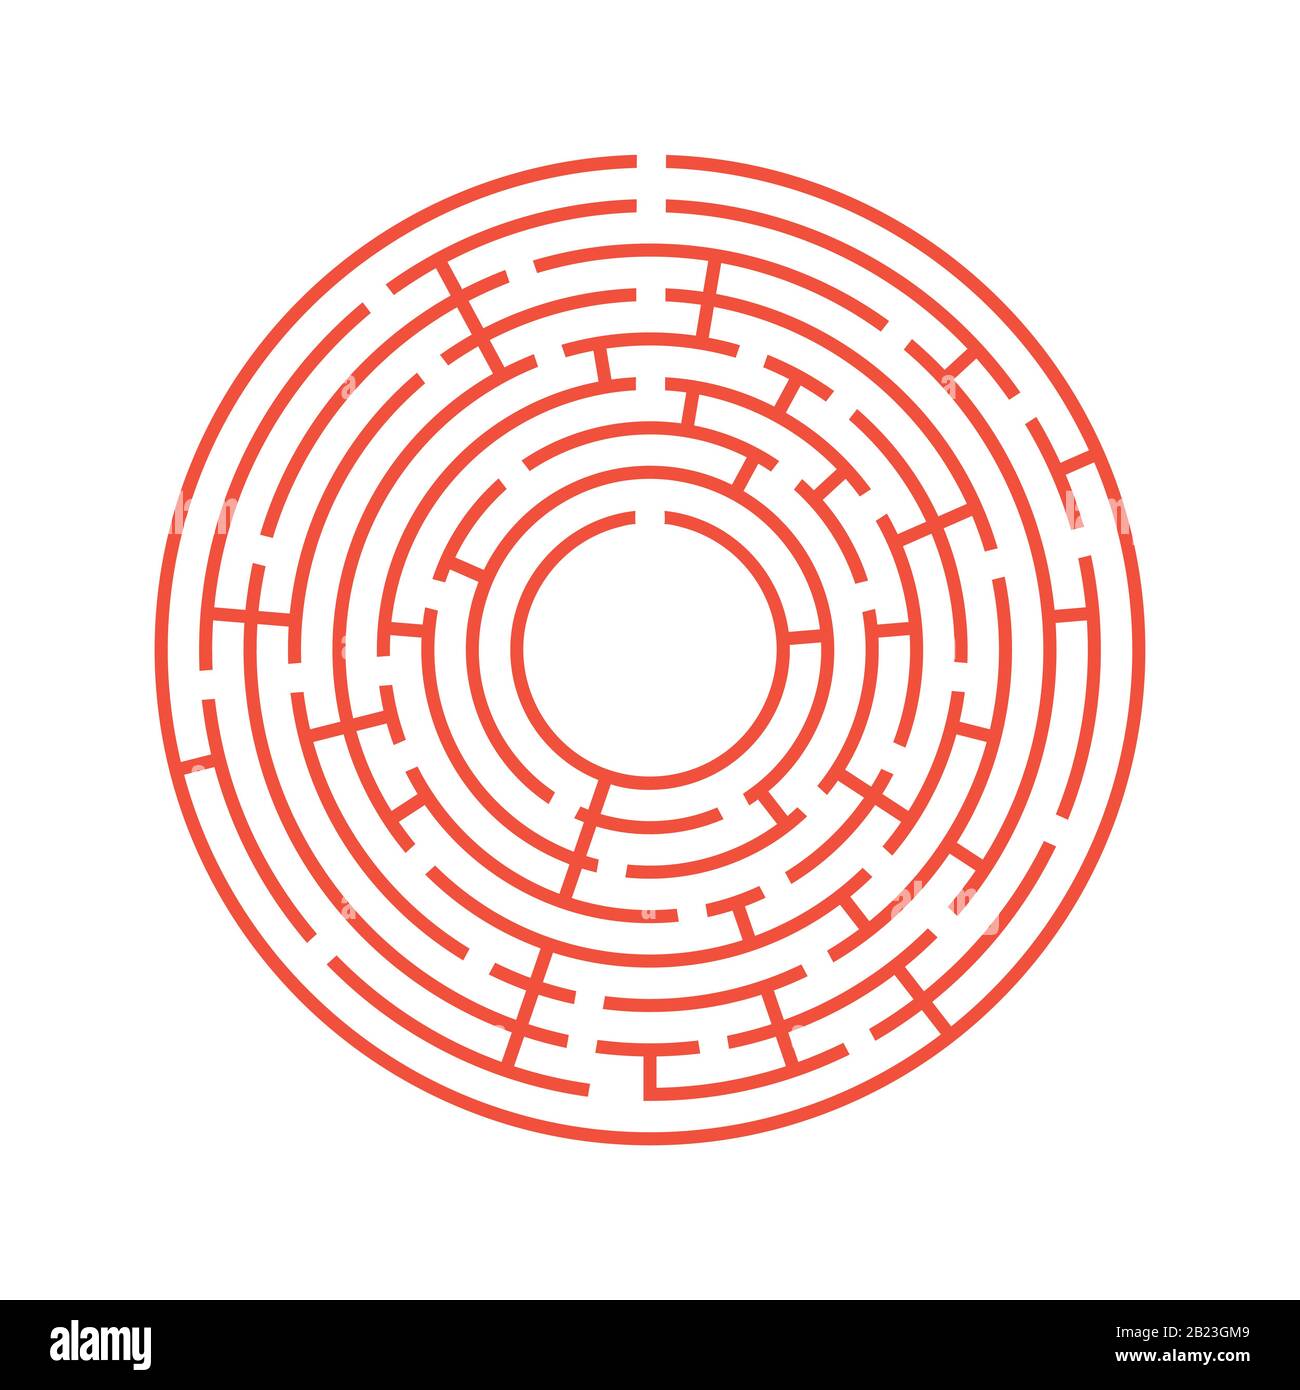 Labyrinthe rond abstrait. Un jeu éducatif pour les enfants et les adultes. Illustration vectorielle plate simple isolée sur fond blanc Illustration de Vecteur